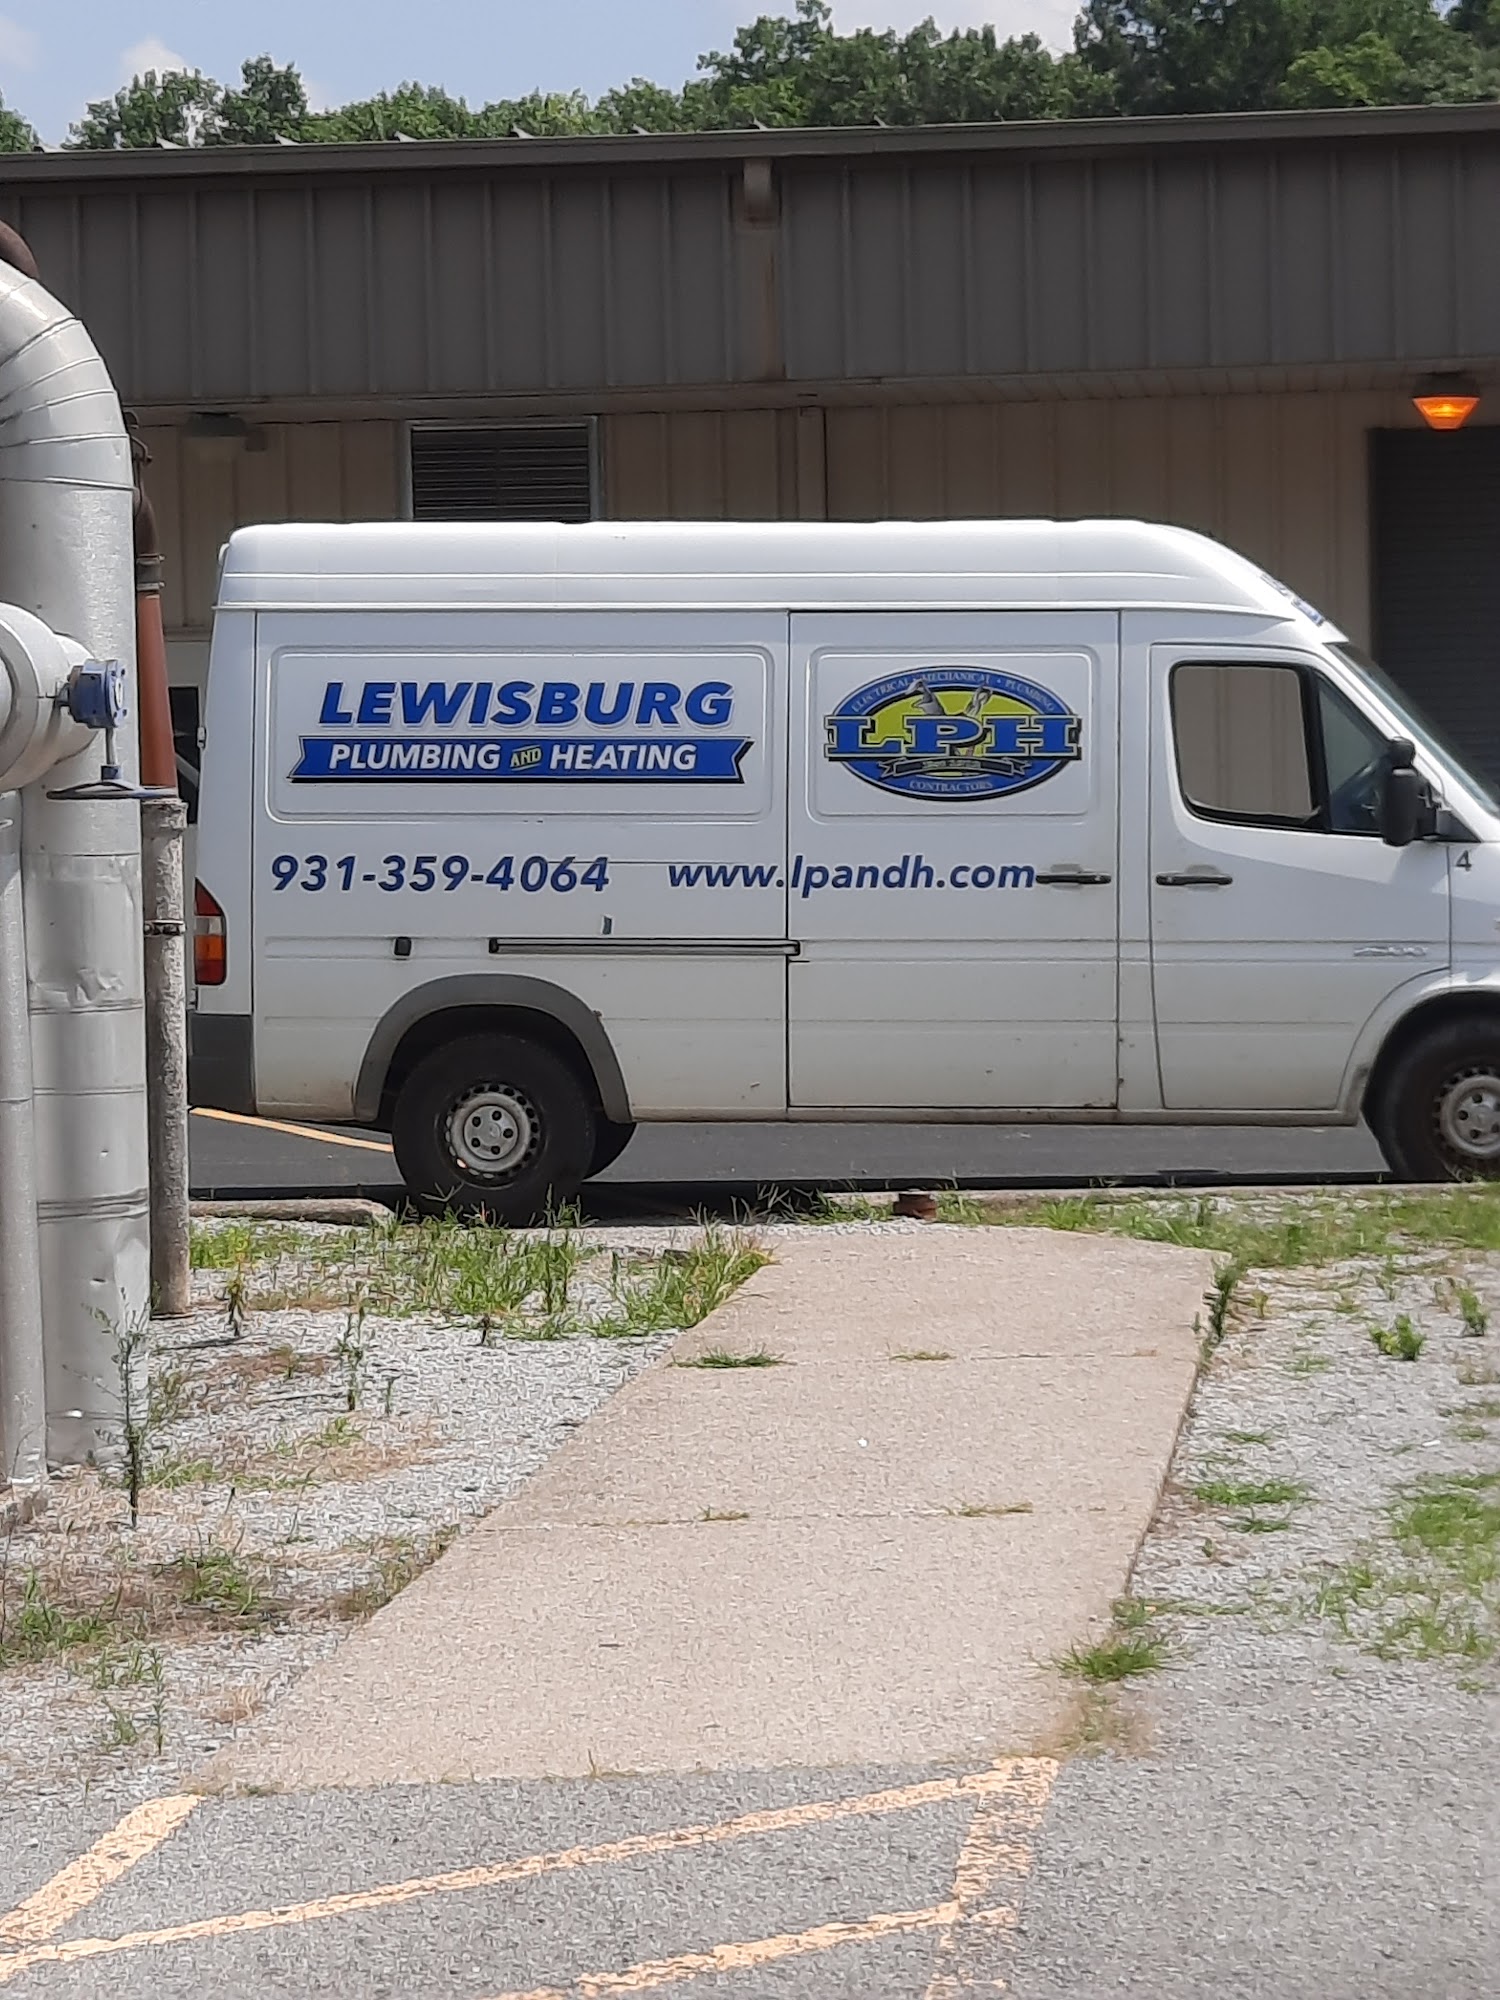 Lewisburg Plumbing & Heating 1621 Nashville Hwy, Lewisburg Tennessee 37091